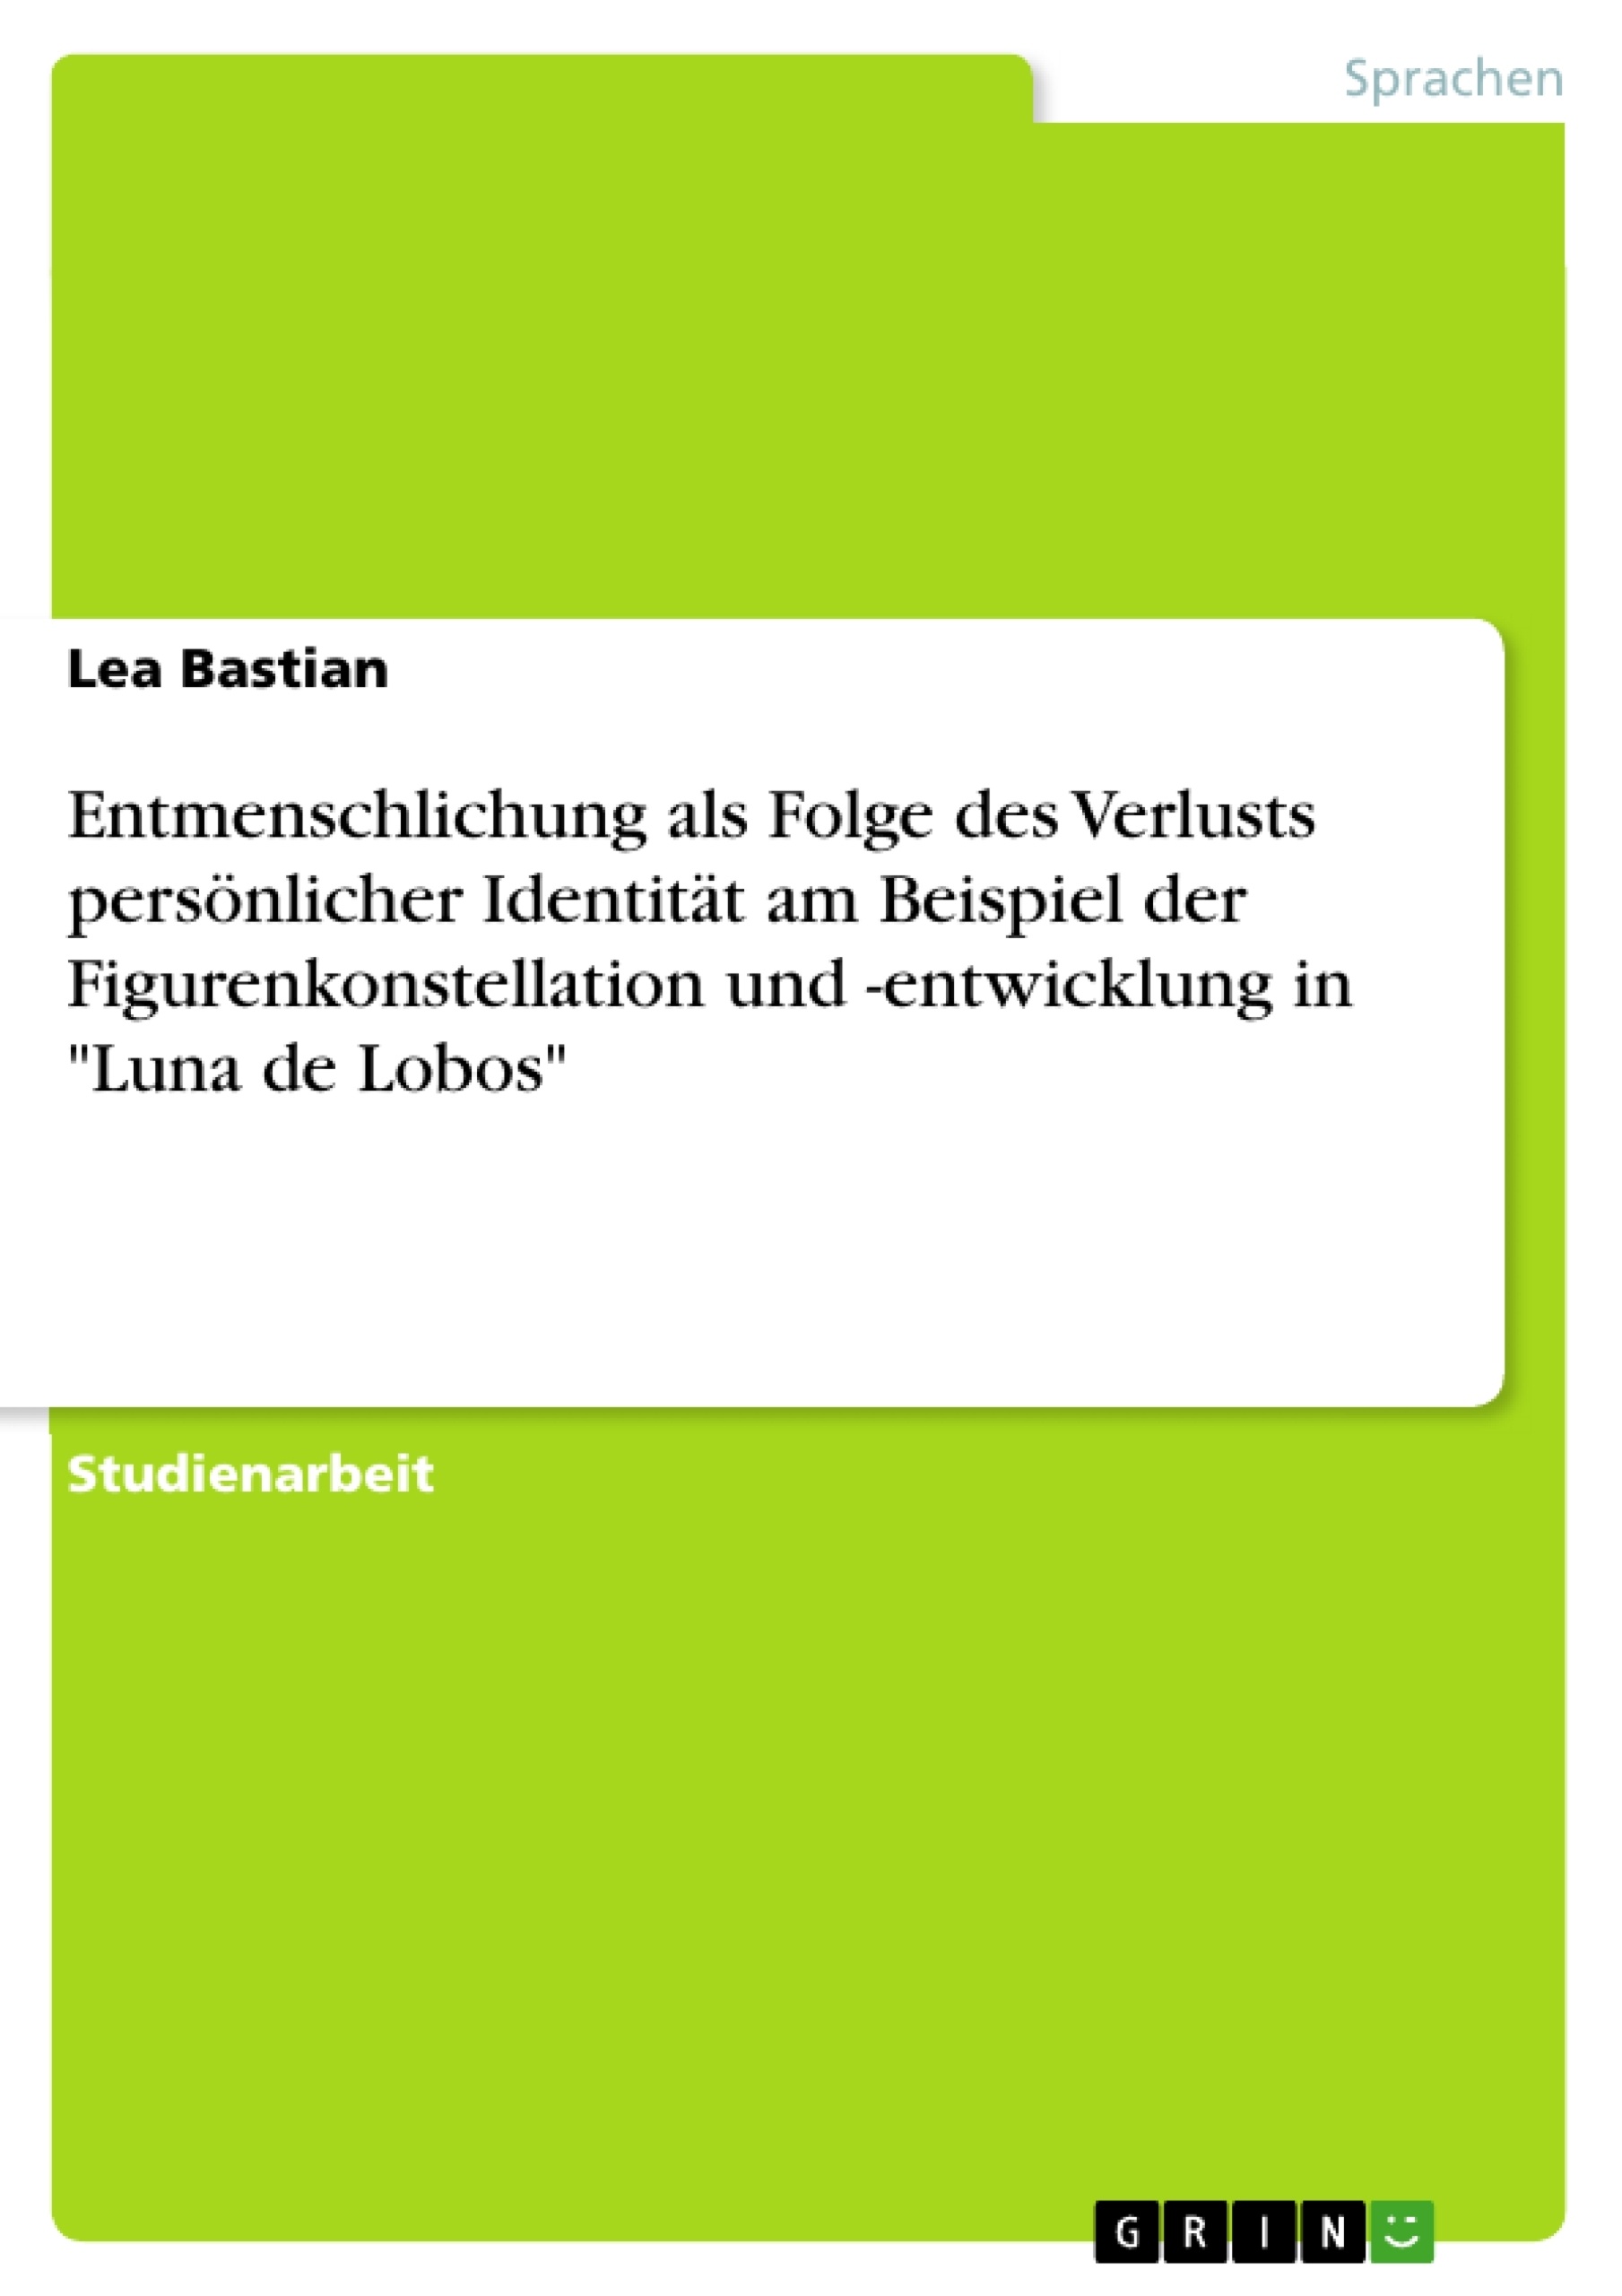 Titre: Entmenschlichung als Folge des Verlusts persönlicher Identität am Beispiel der Figurenkonstellation und -entwicklung in "Luna de Lobos"